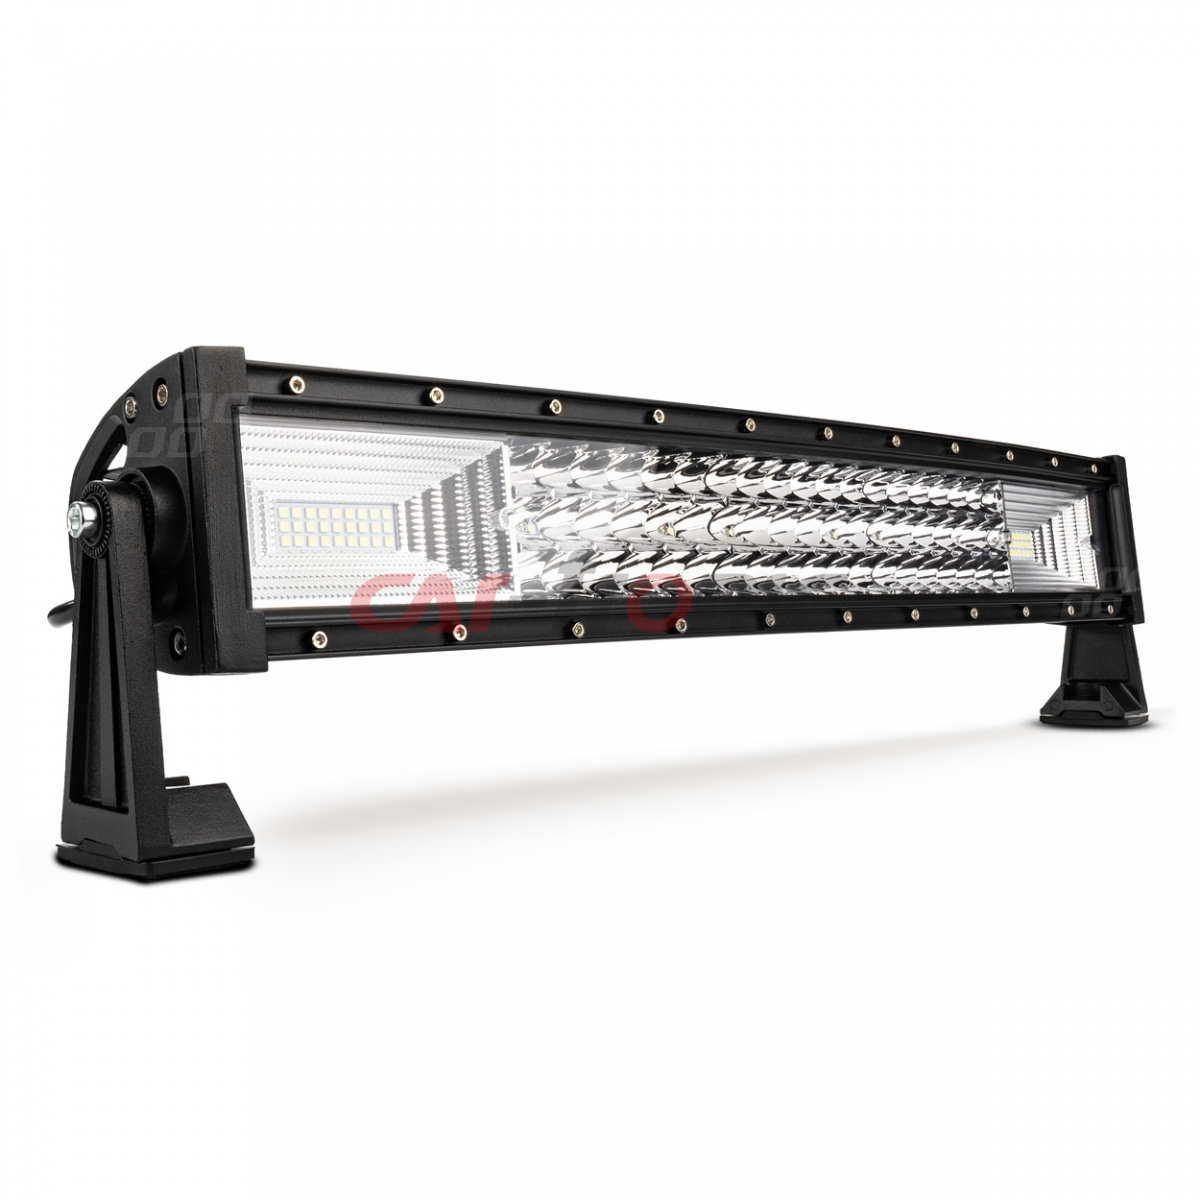 Lampa robocza panelowa LED BAR zakrzywiona 52 cm 9-36V AMIO-03255 AWL44